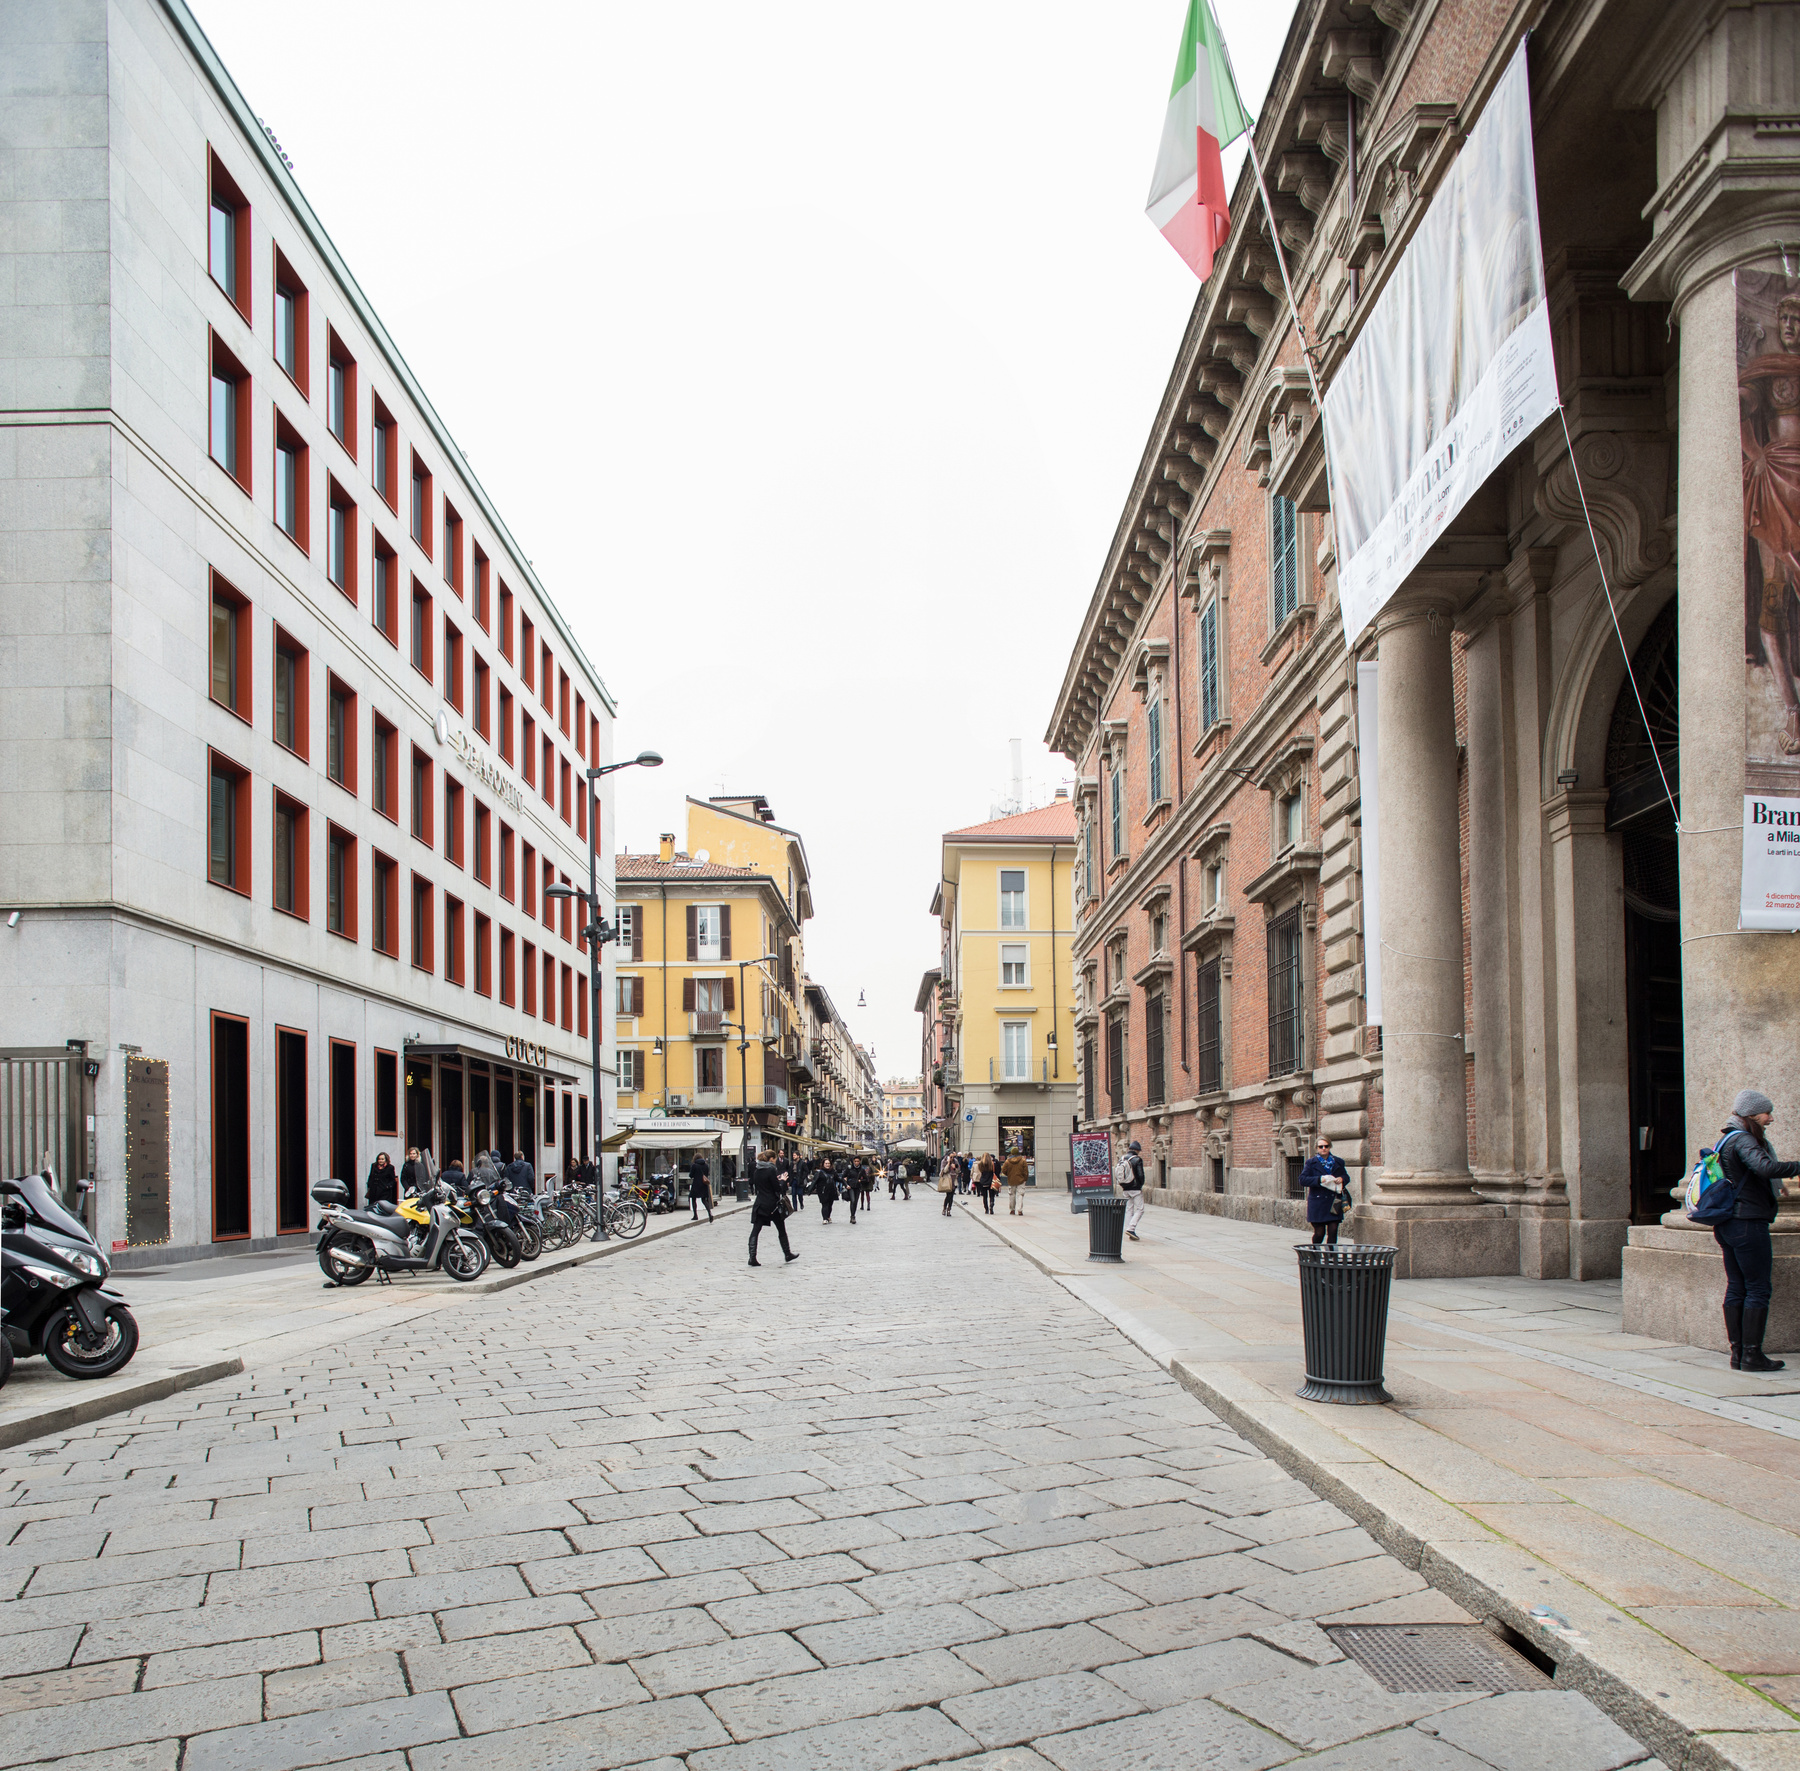 Ne kerülje el Milánóban az üzleteket sem! Ez itt például egy elég elegáns Zara bejárat.